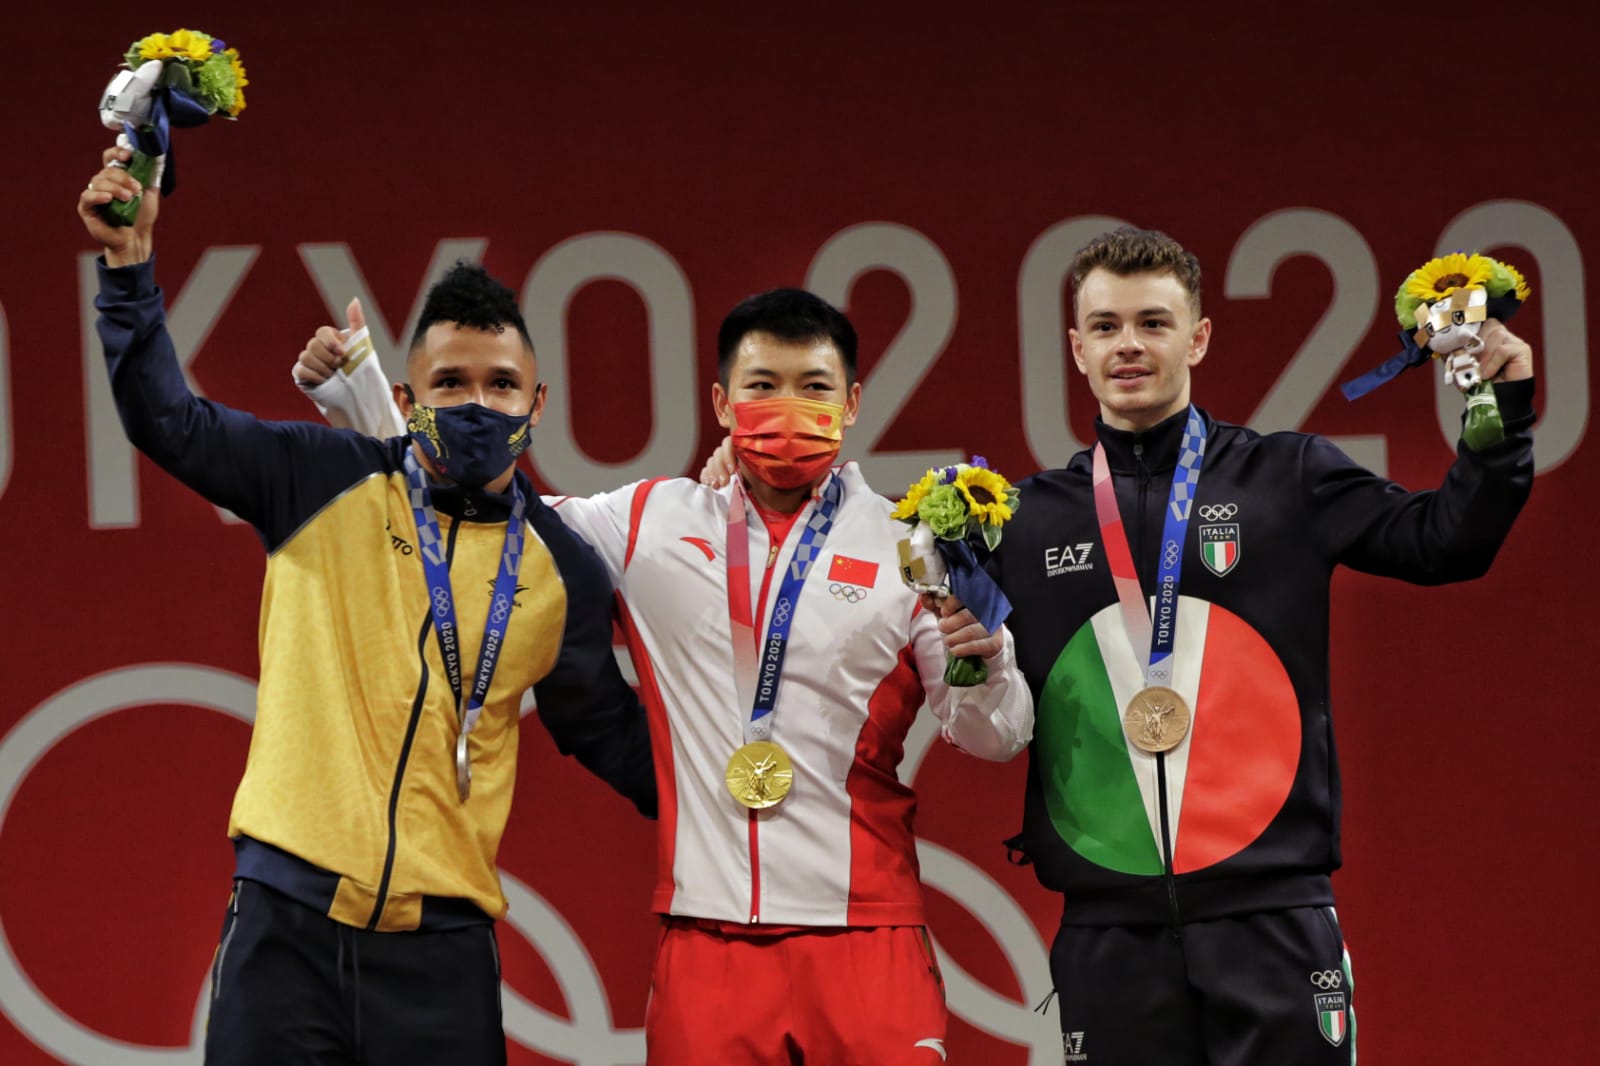 Luis Javier Mosquera-medalla-juegos-olímpicos